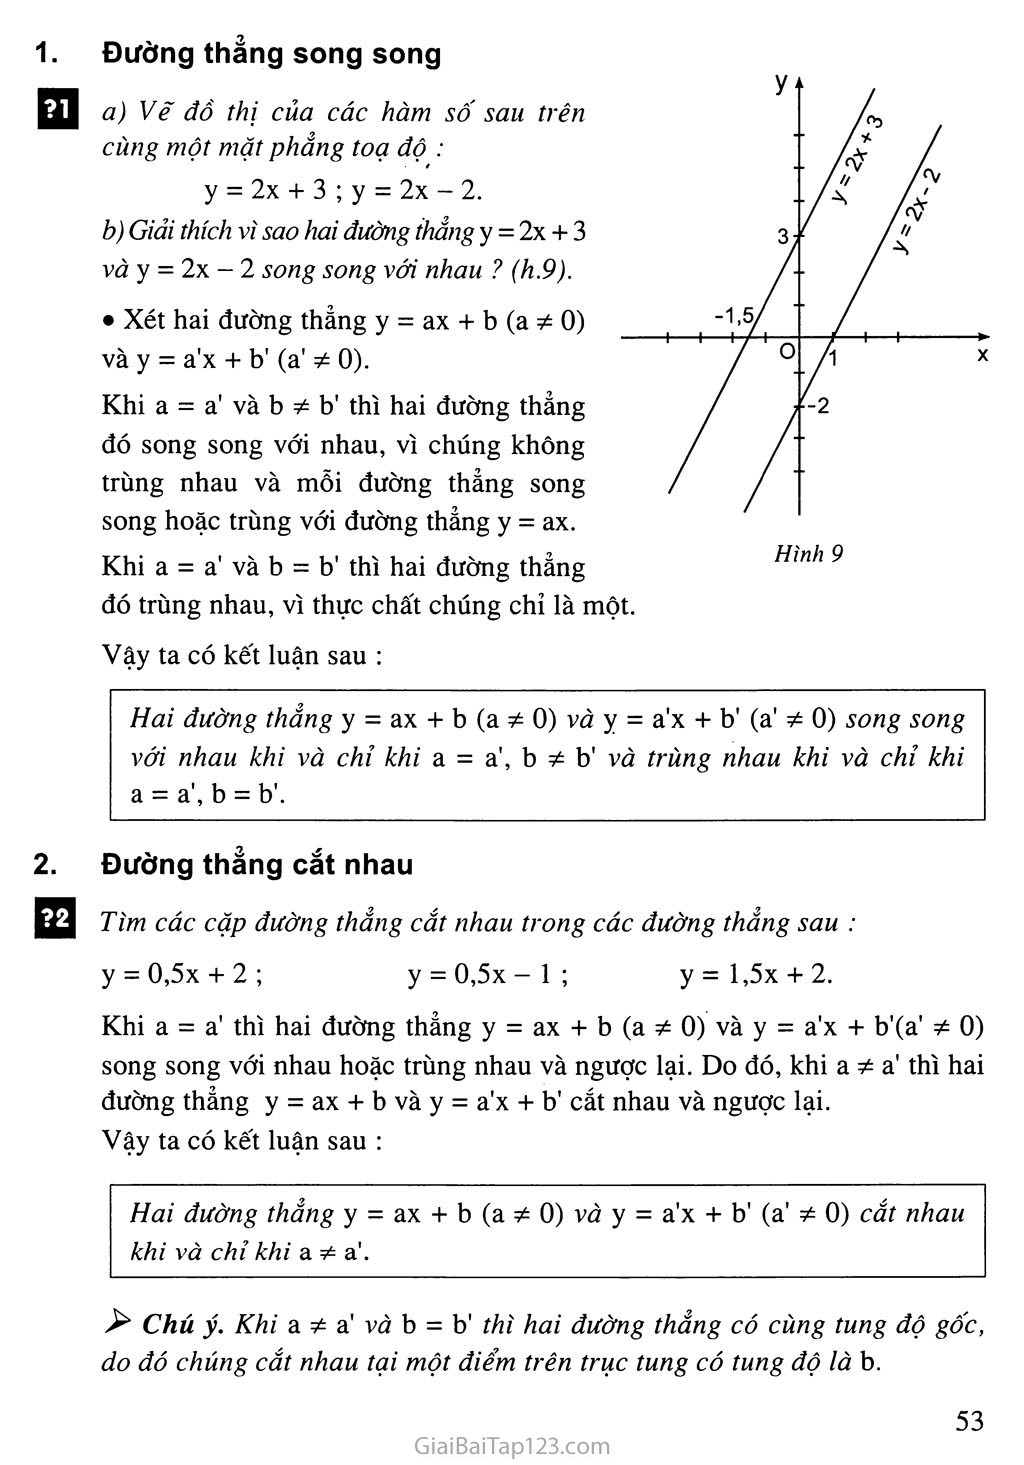 Bài 4. Đường thẳng song song và đường thẳng cắt nhau trang 2